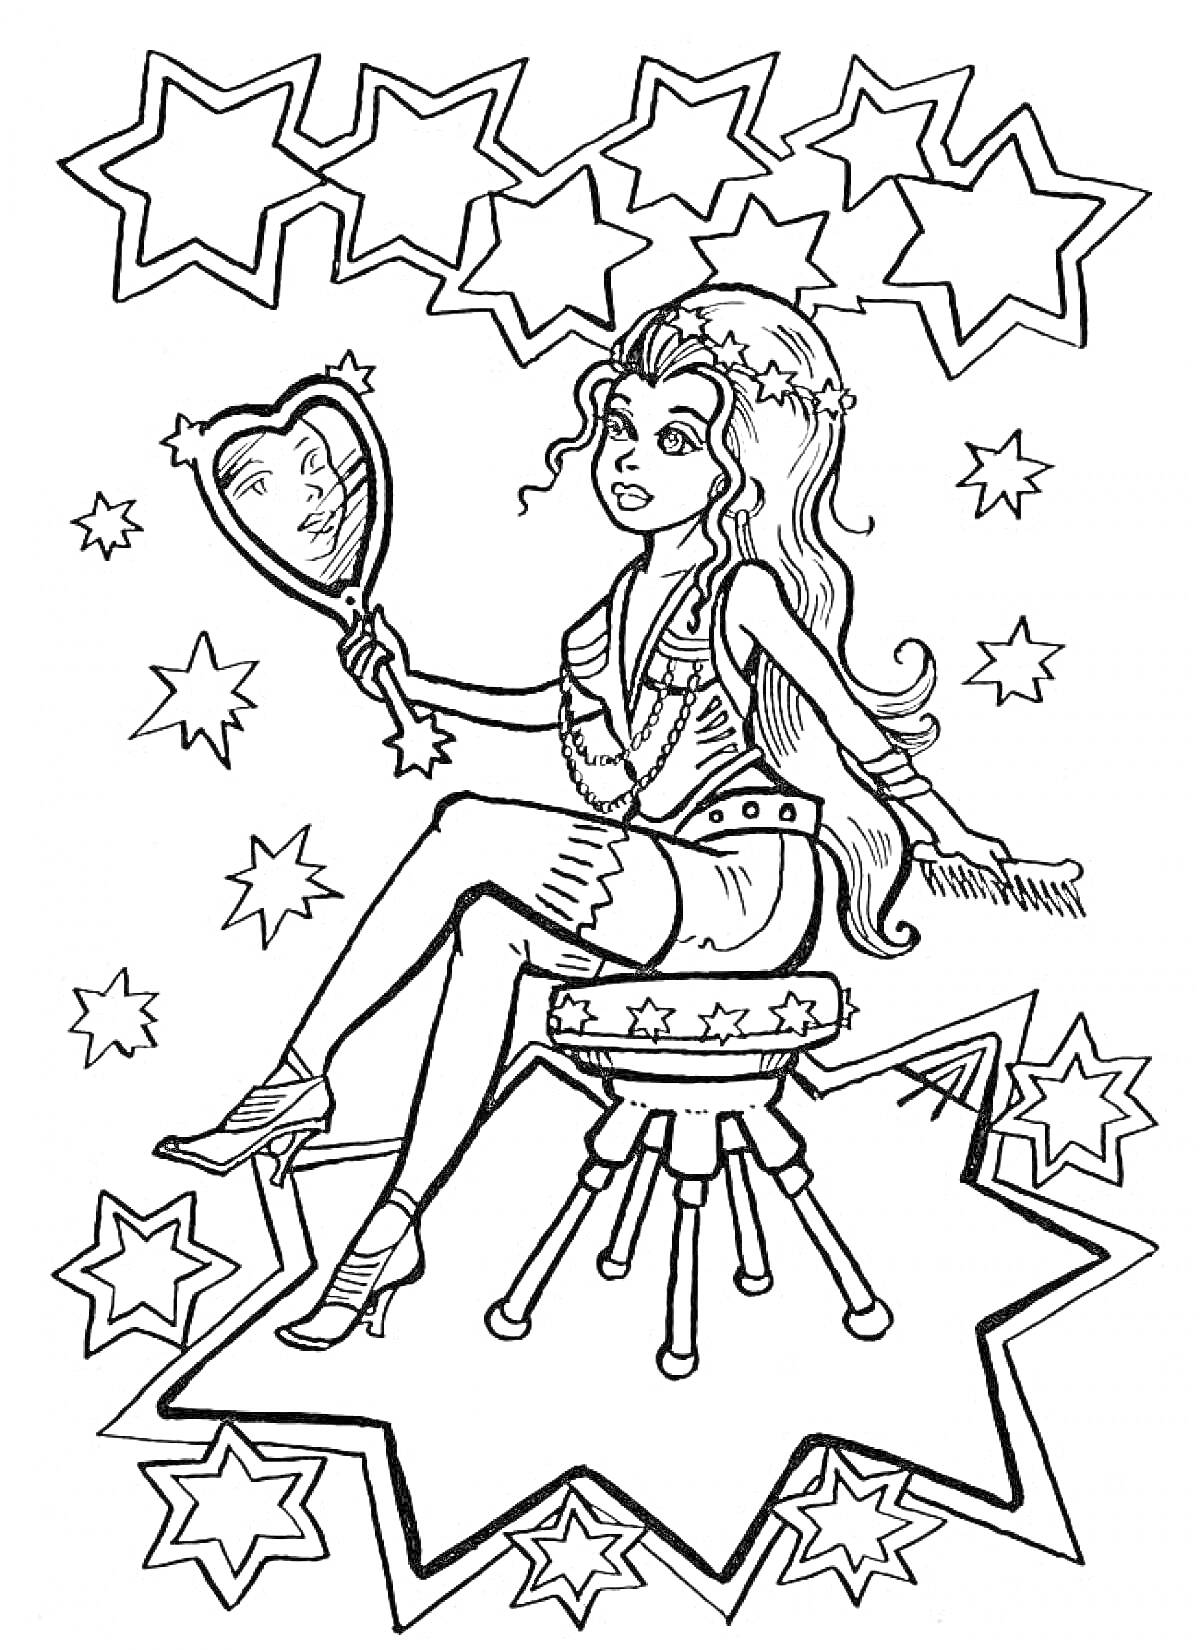 Девушка, сидящая на звезде, с ручным зеркальцем среди звезд